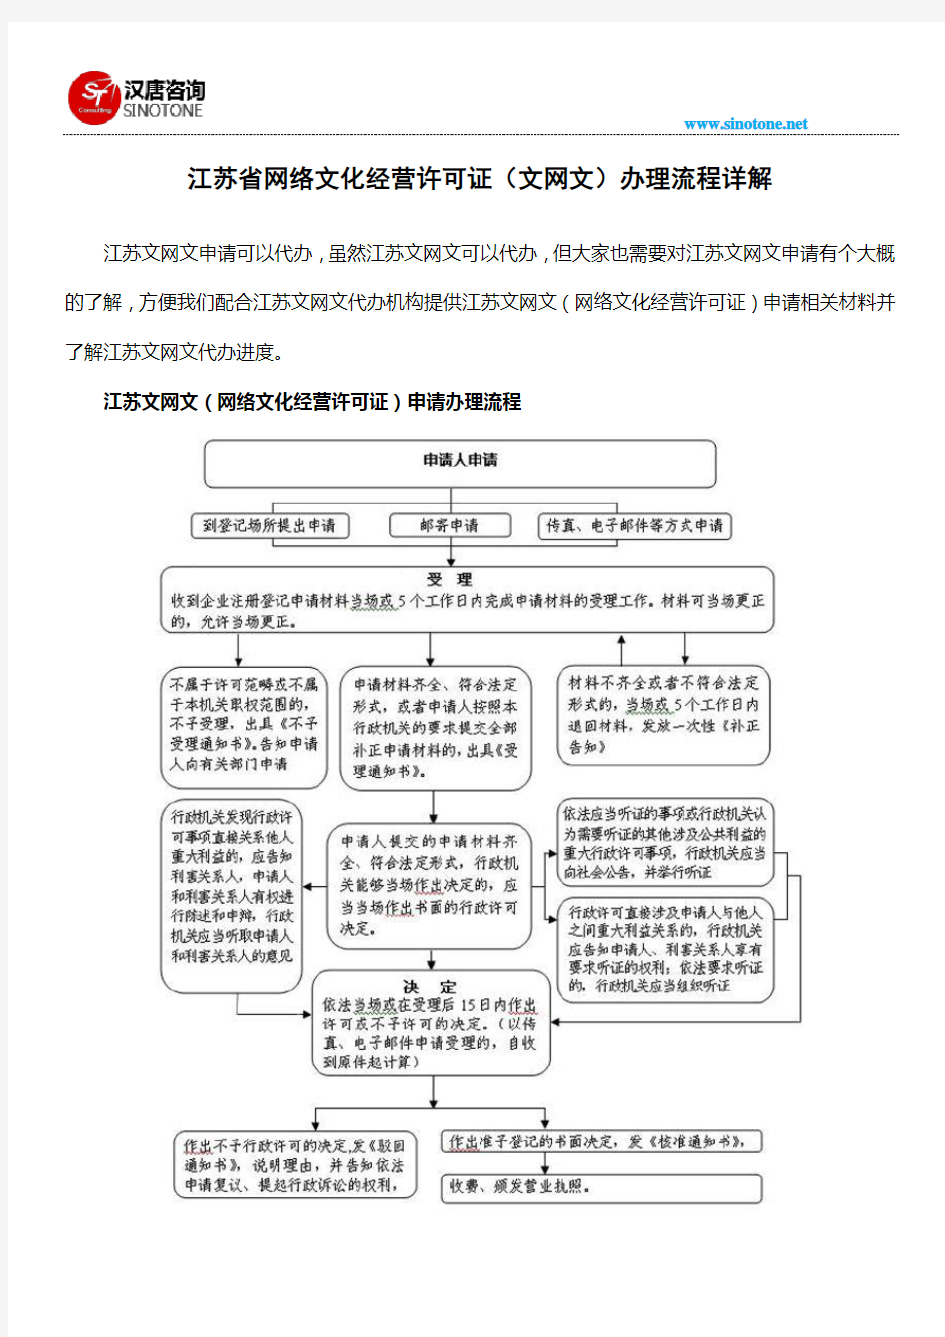 江苏省网络文化经营许可证(文网文)办理流程详解